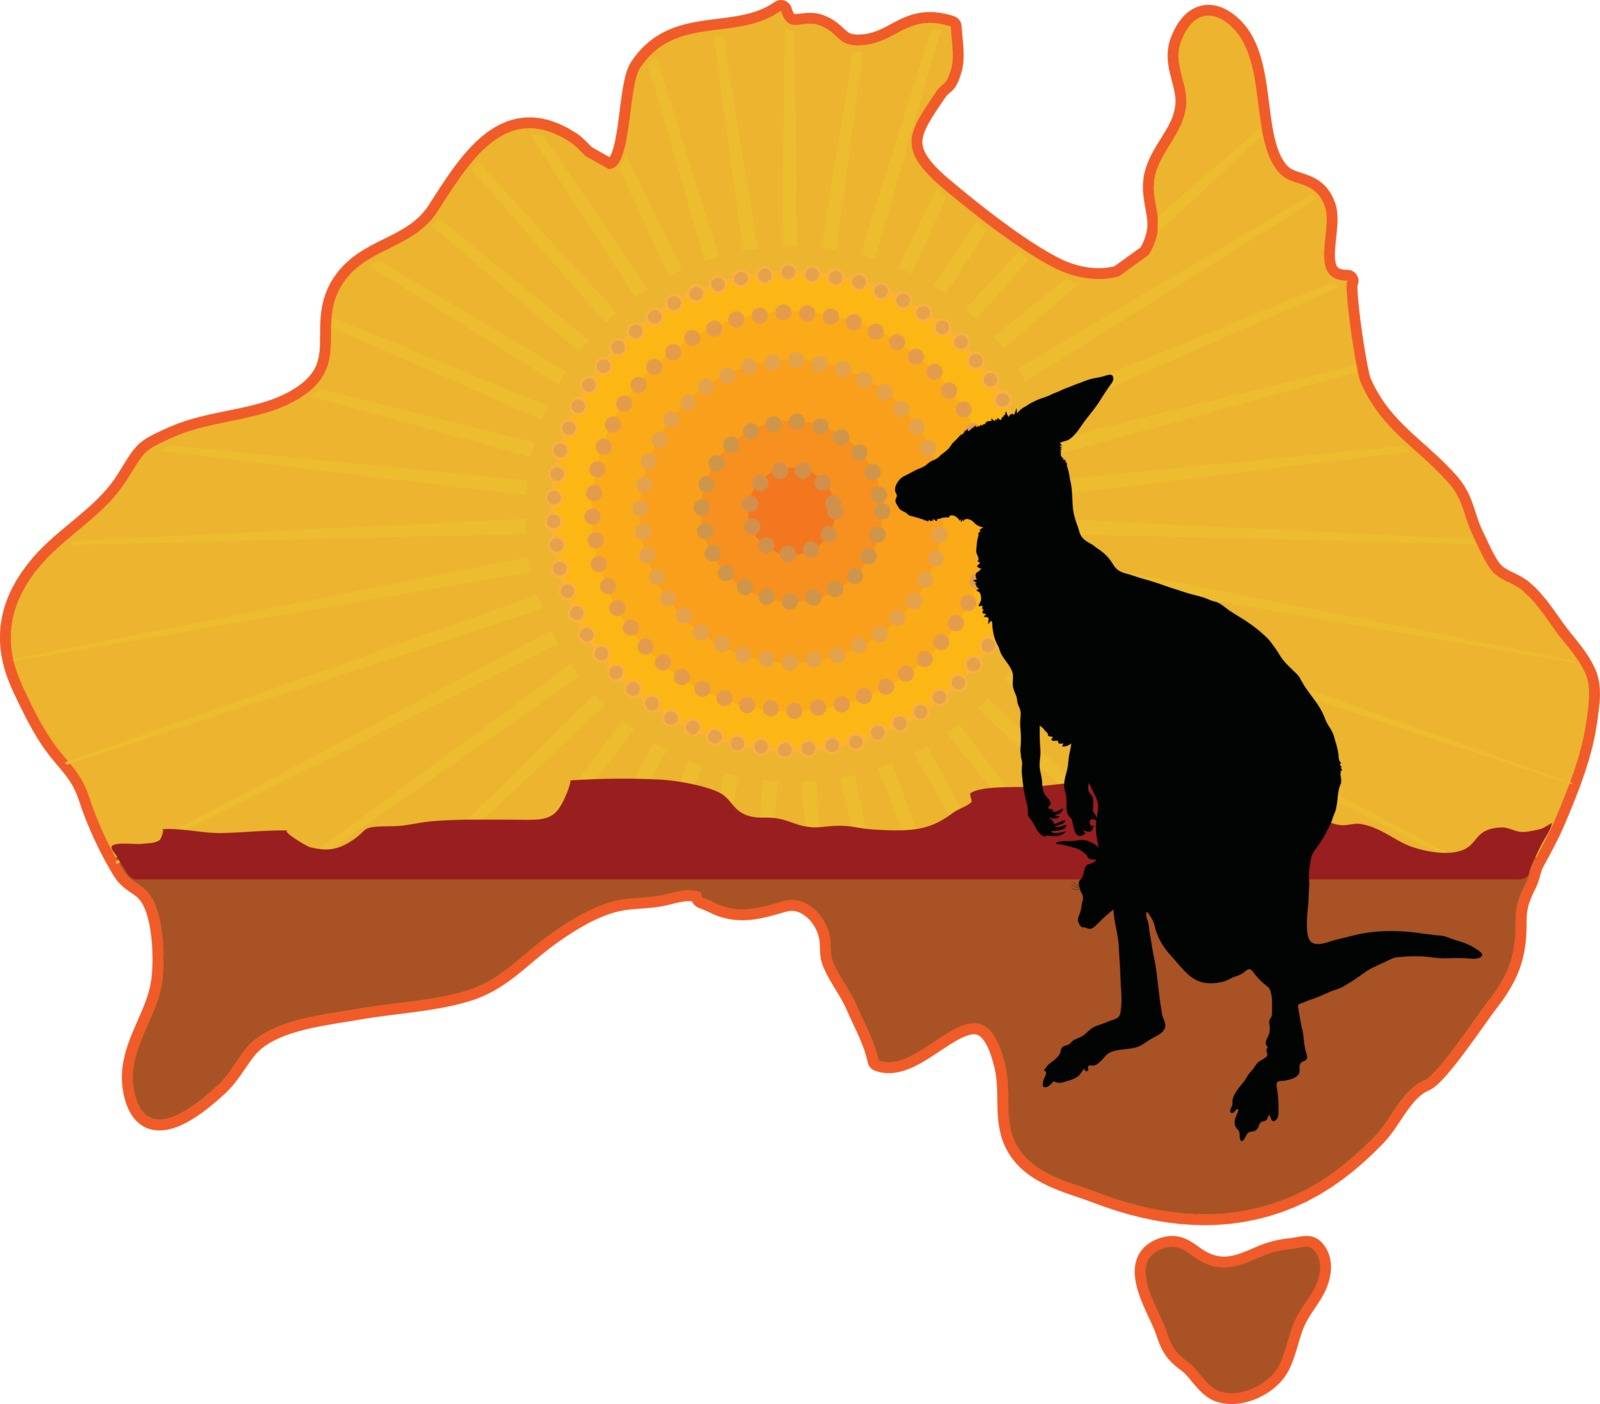 Australia Kangaroo by mkoudis